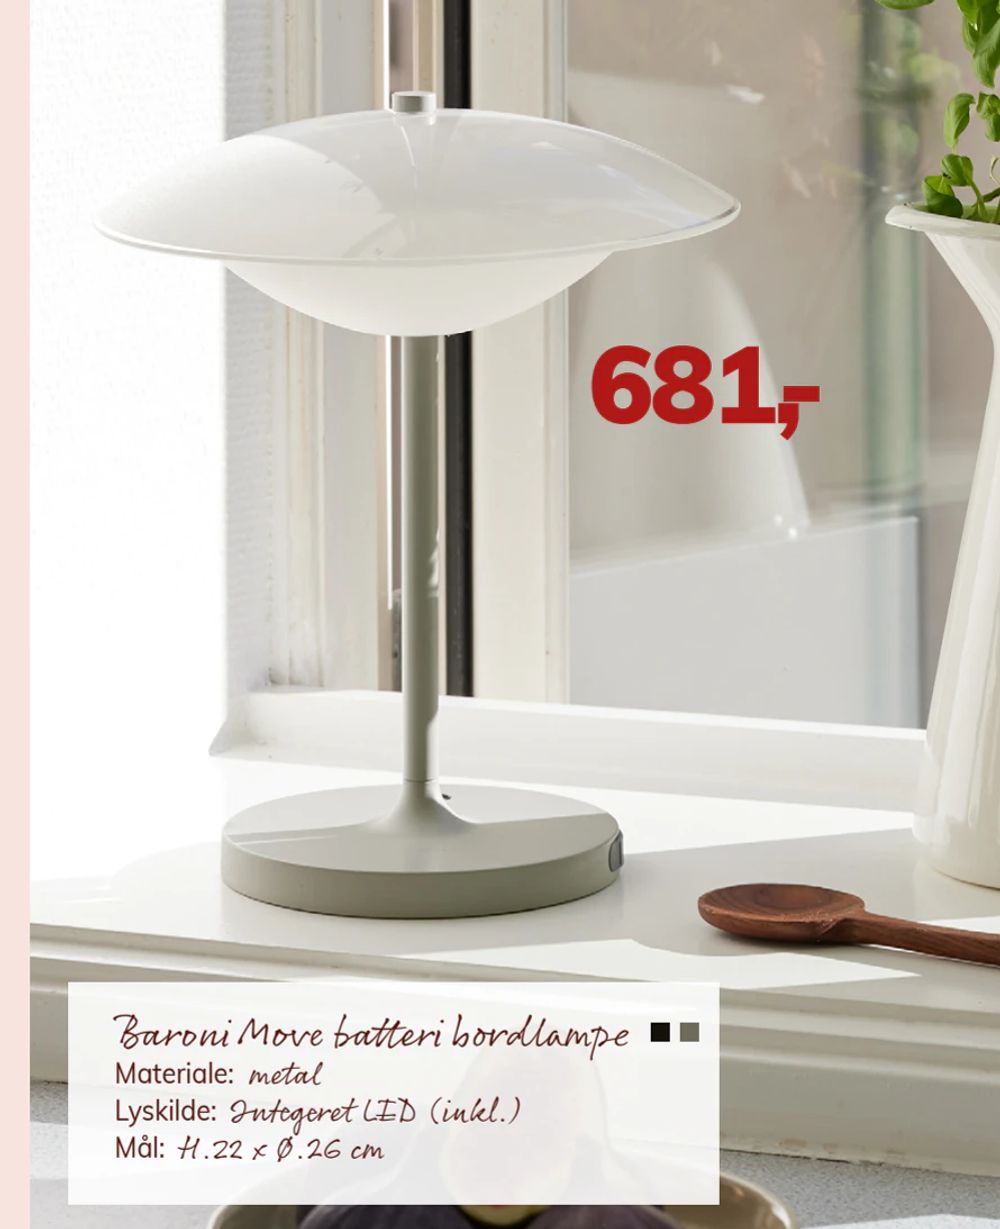 Tilbud på Baroni Move batteri bordlampe fra Daells Bolighus til 681 kr.